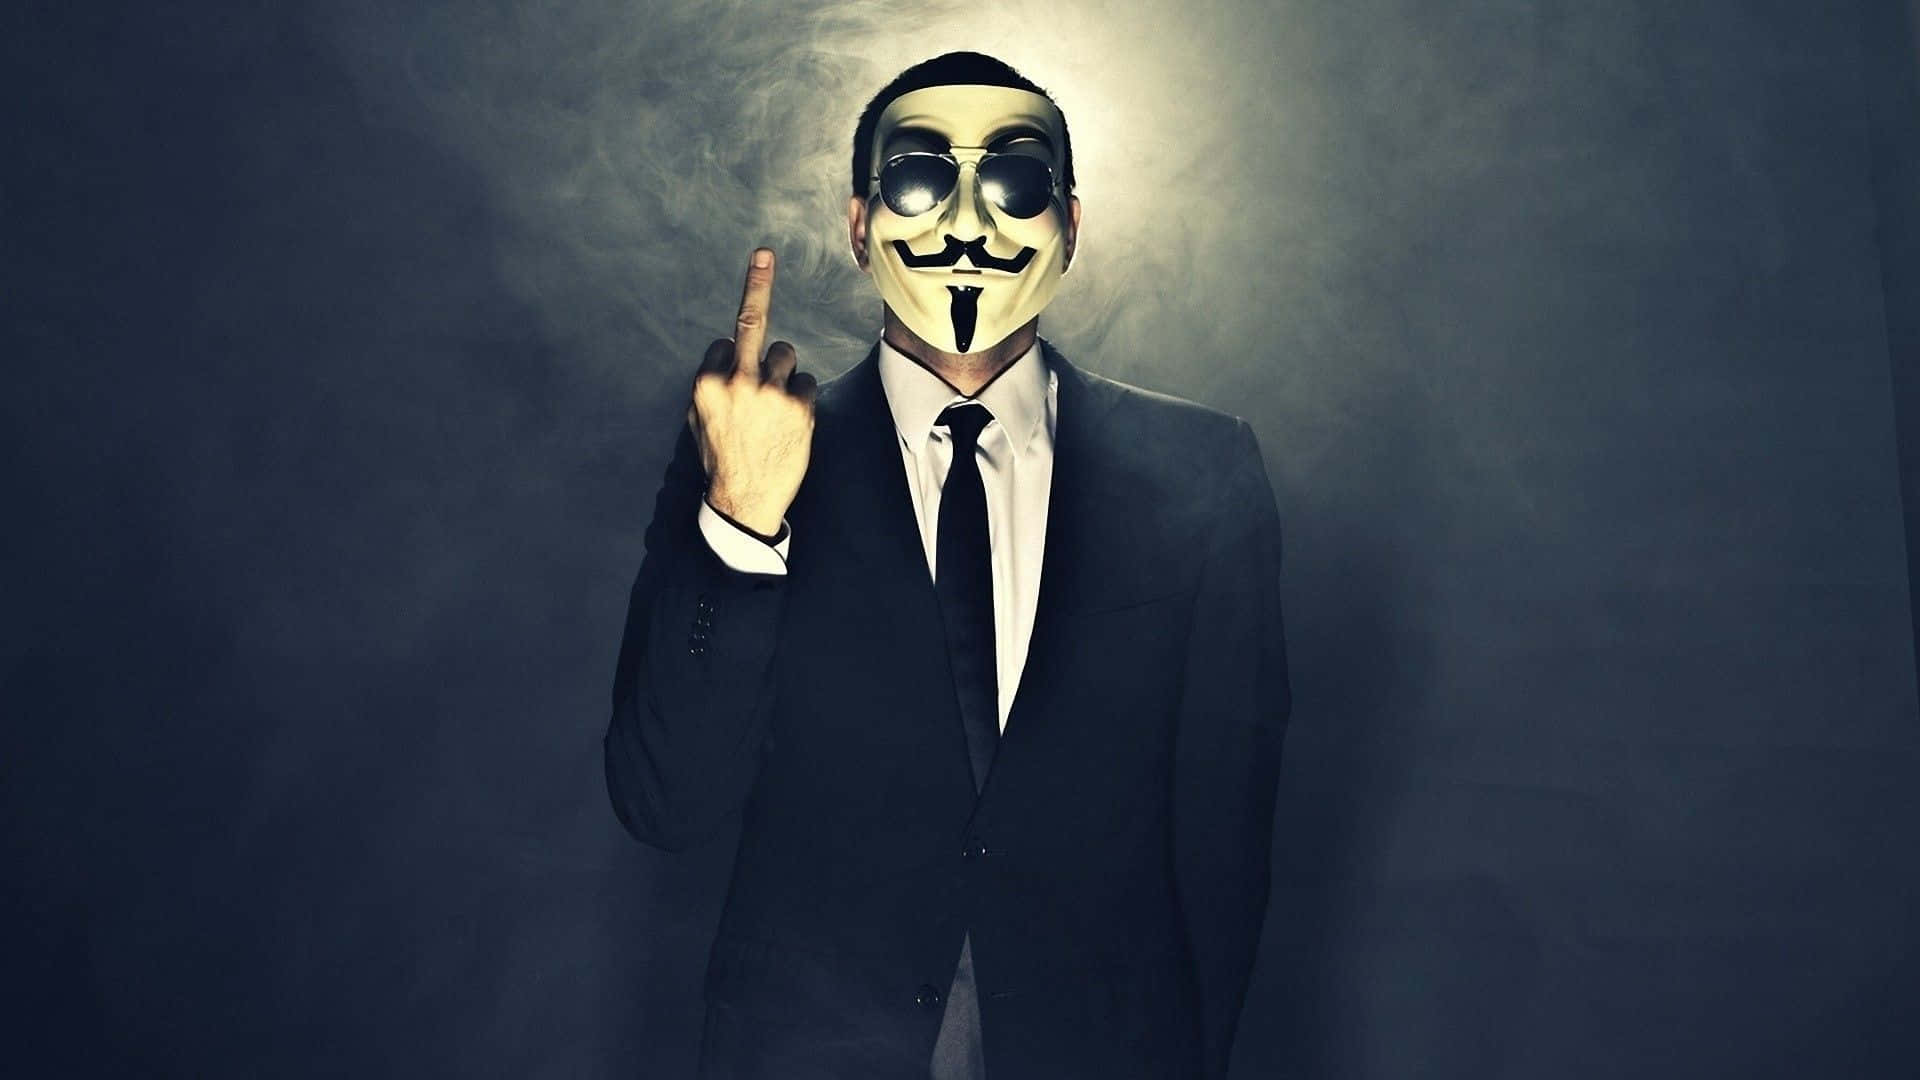 print4k Masken Anonyme Mand Med Beskidt Fvindaftryk Wallpaper